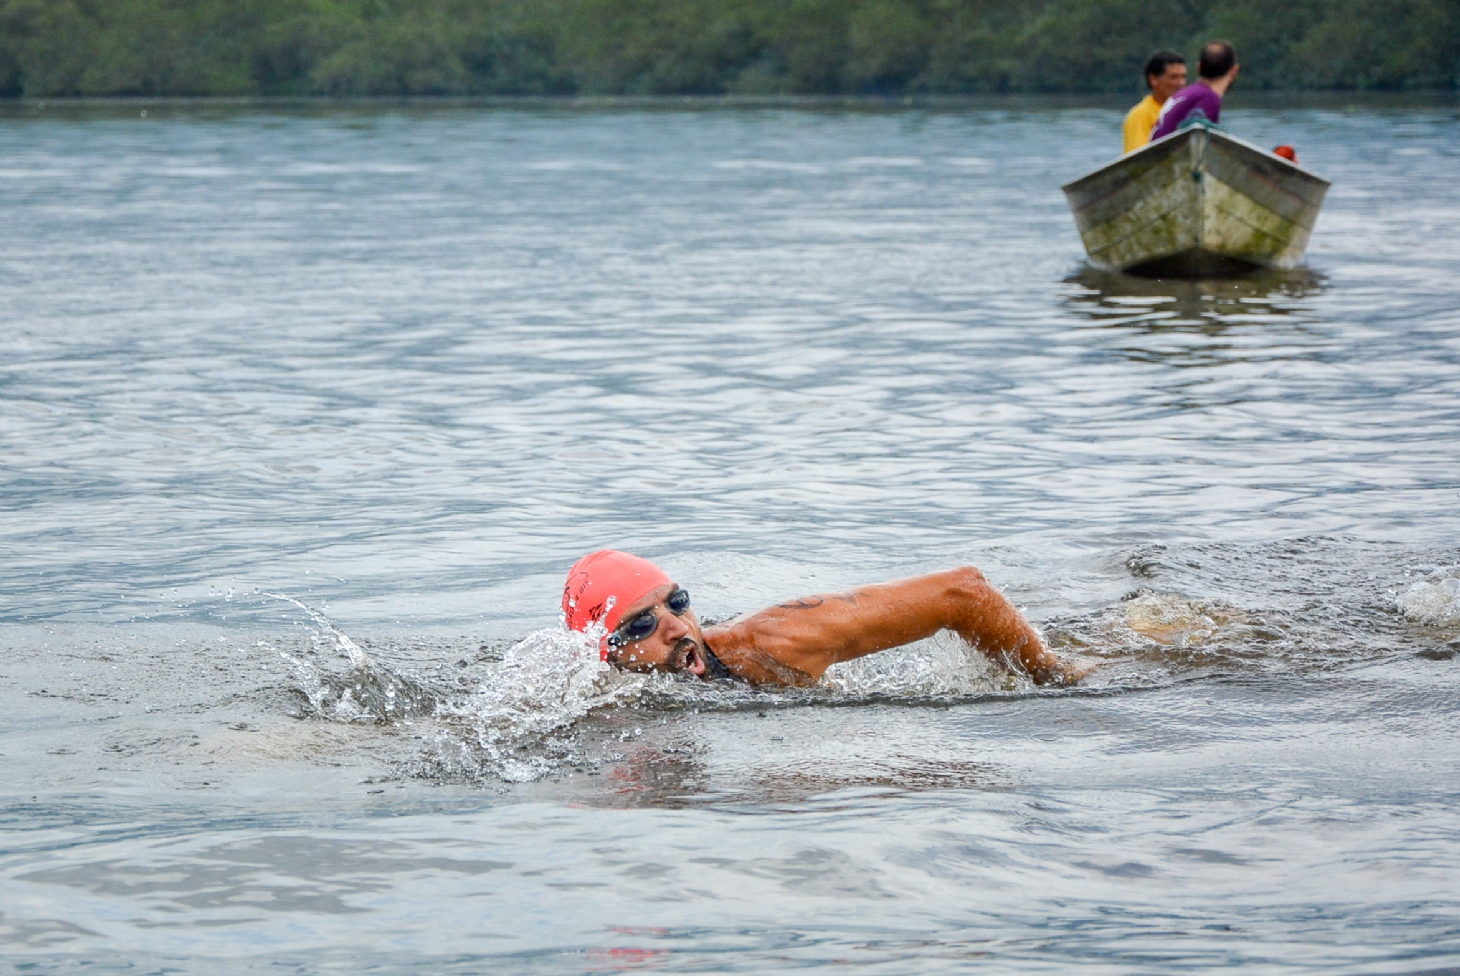 Ultramaratona Aquática do Rio Itapanhaú reunirá mais de 200 atletas | Jornal da Orla